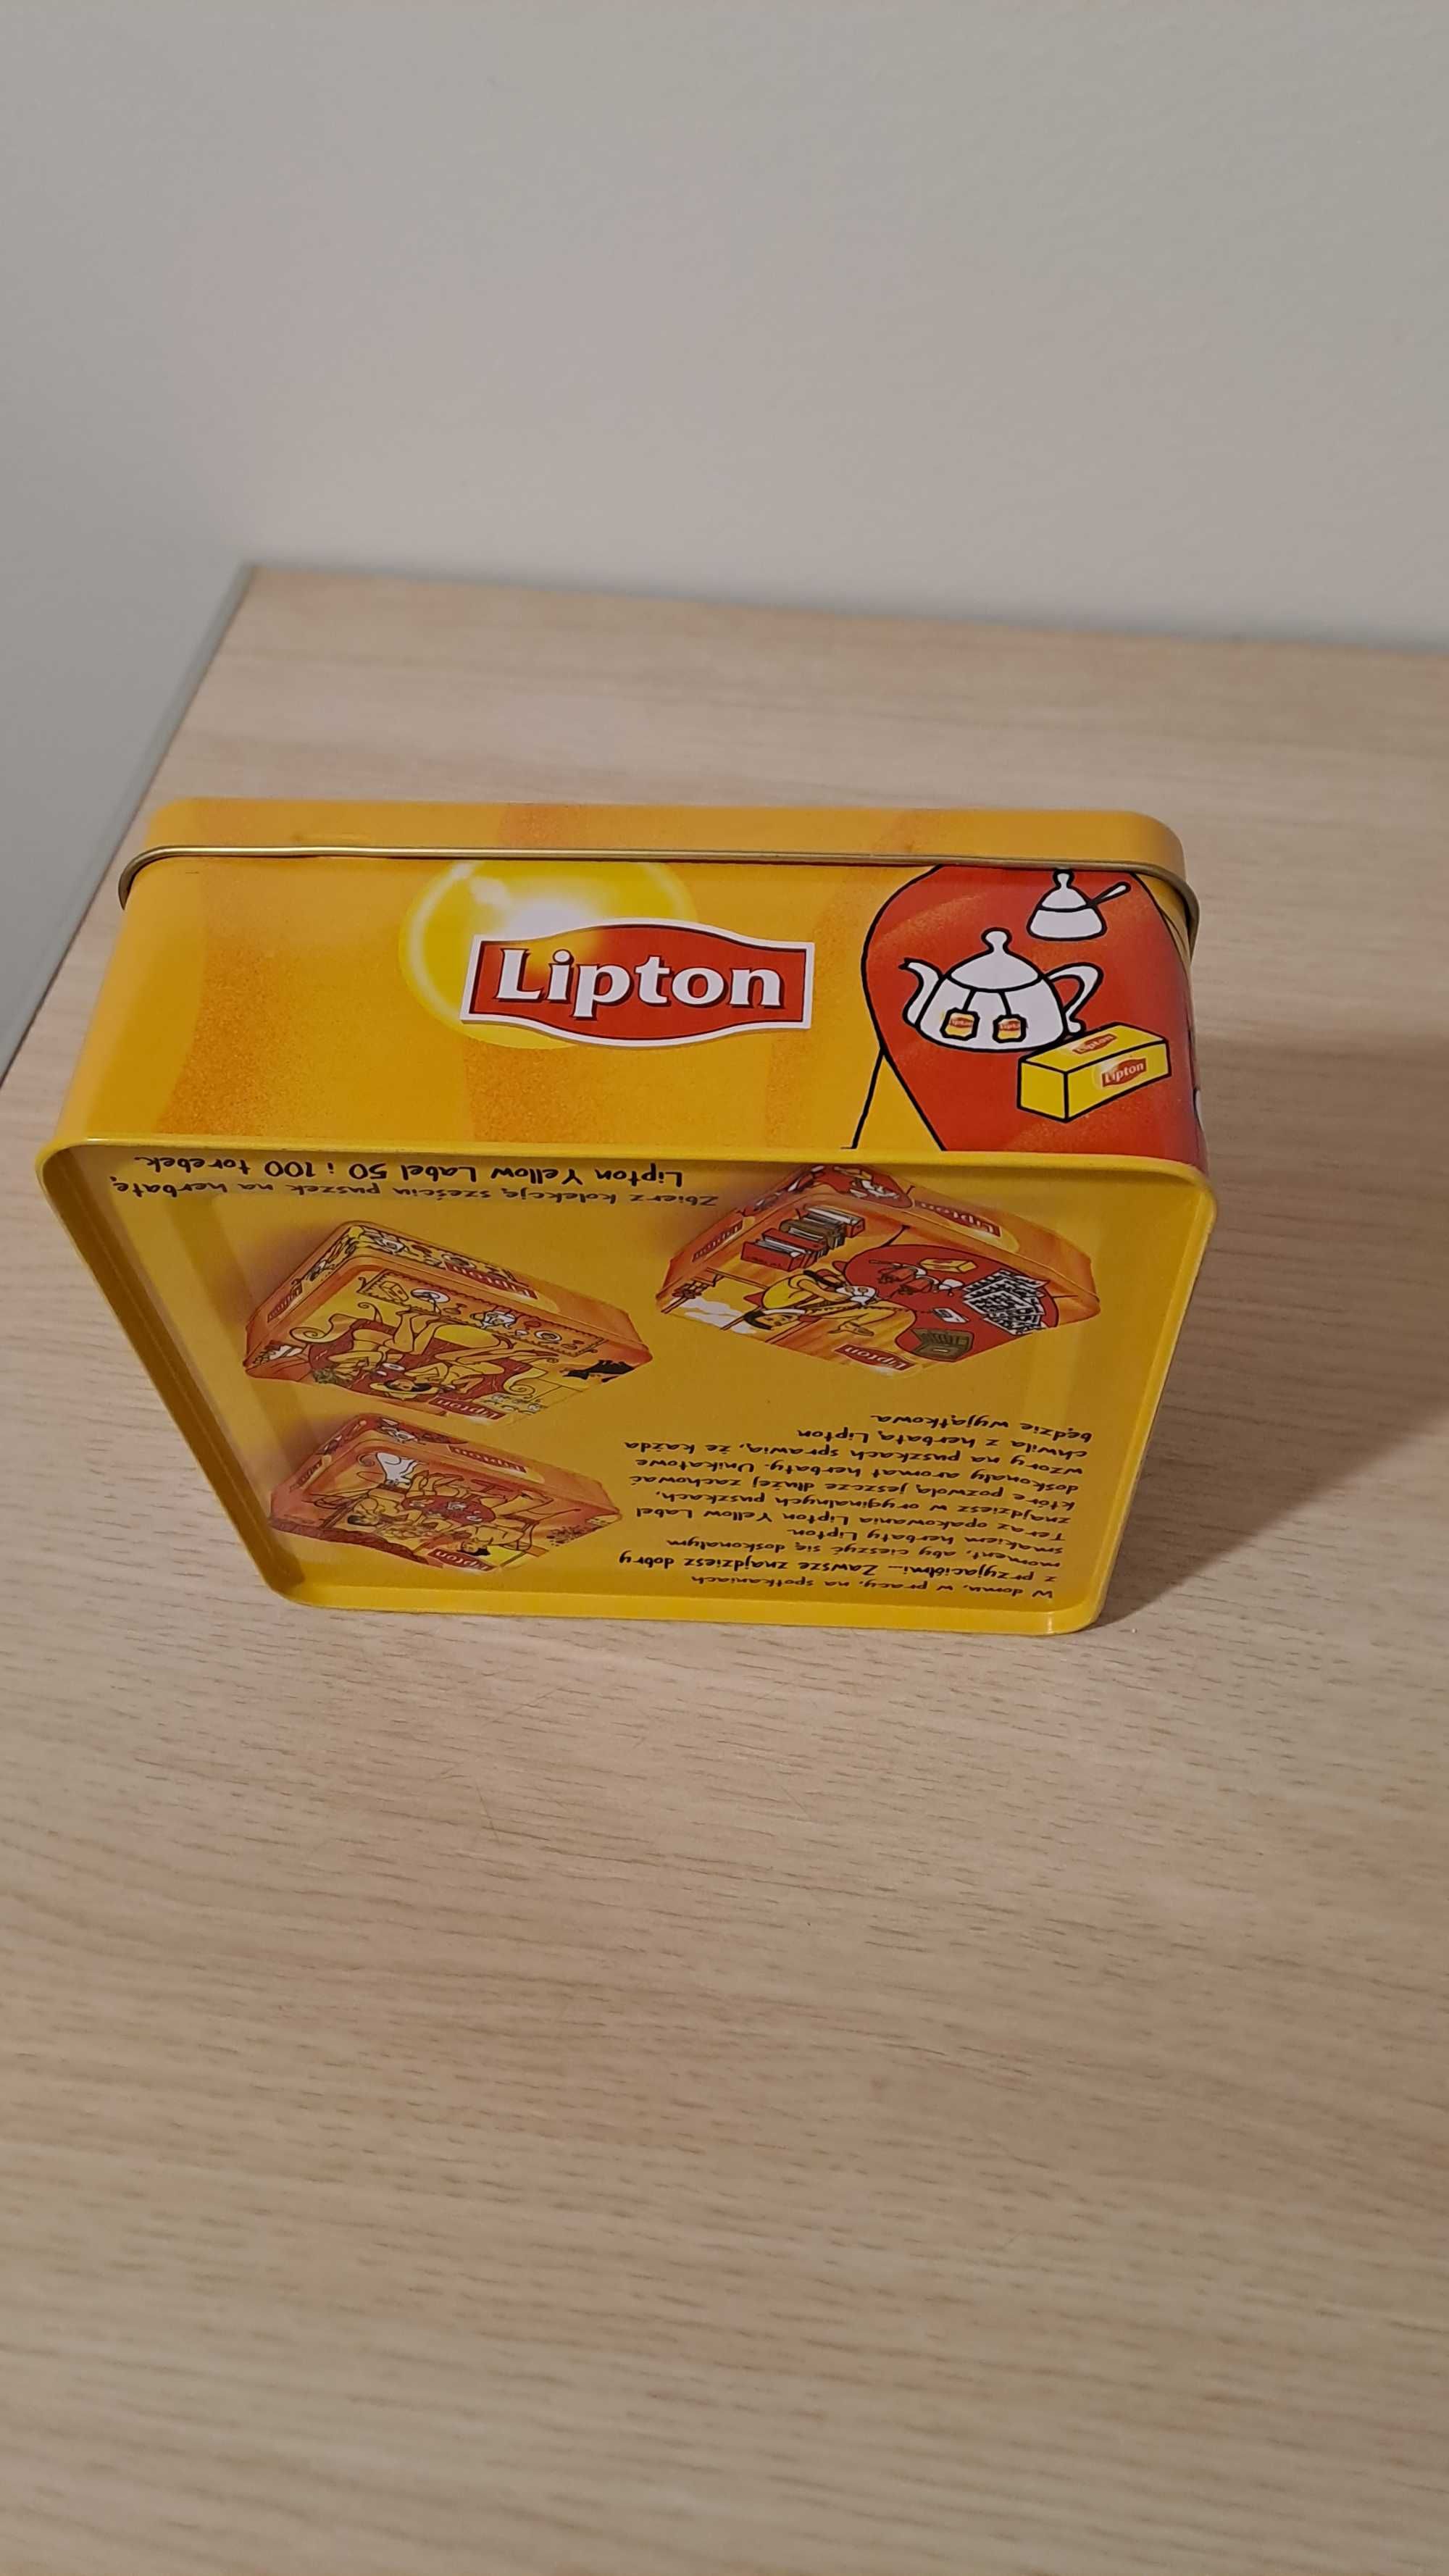 nowe metalowe pudełko do herbaty firmy Lipton